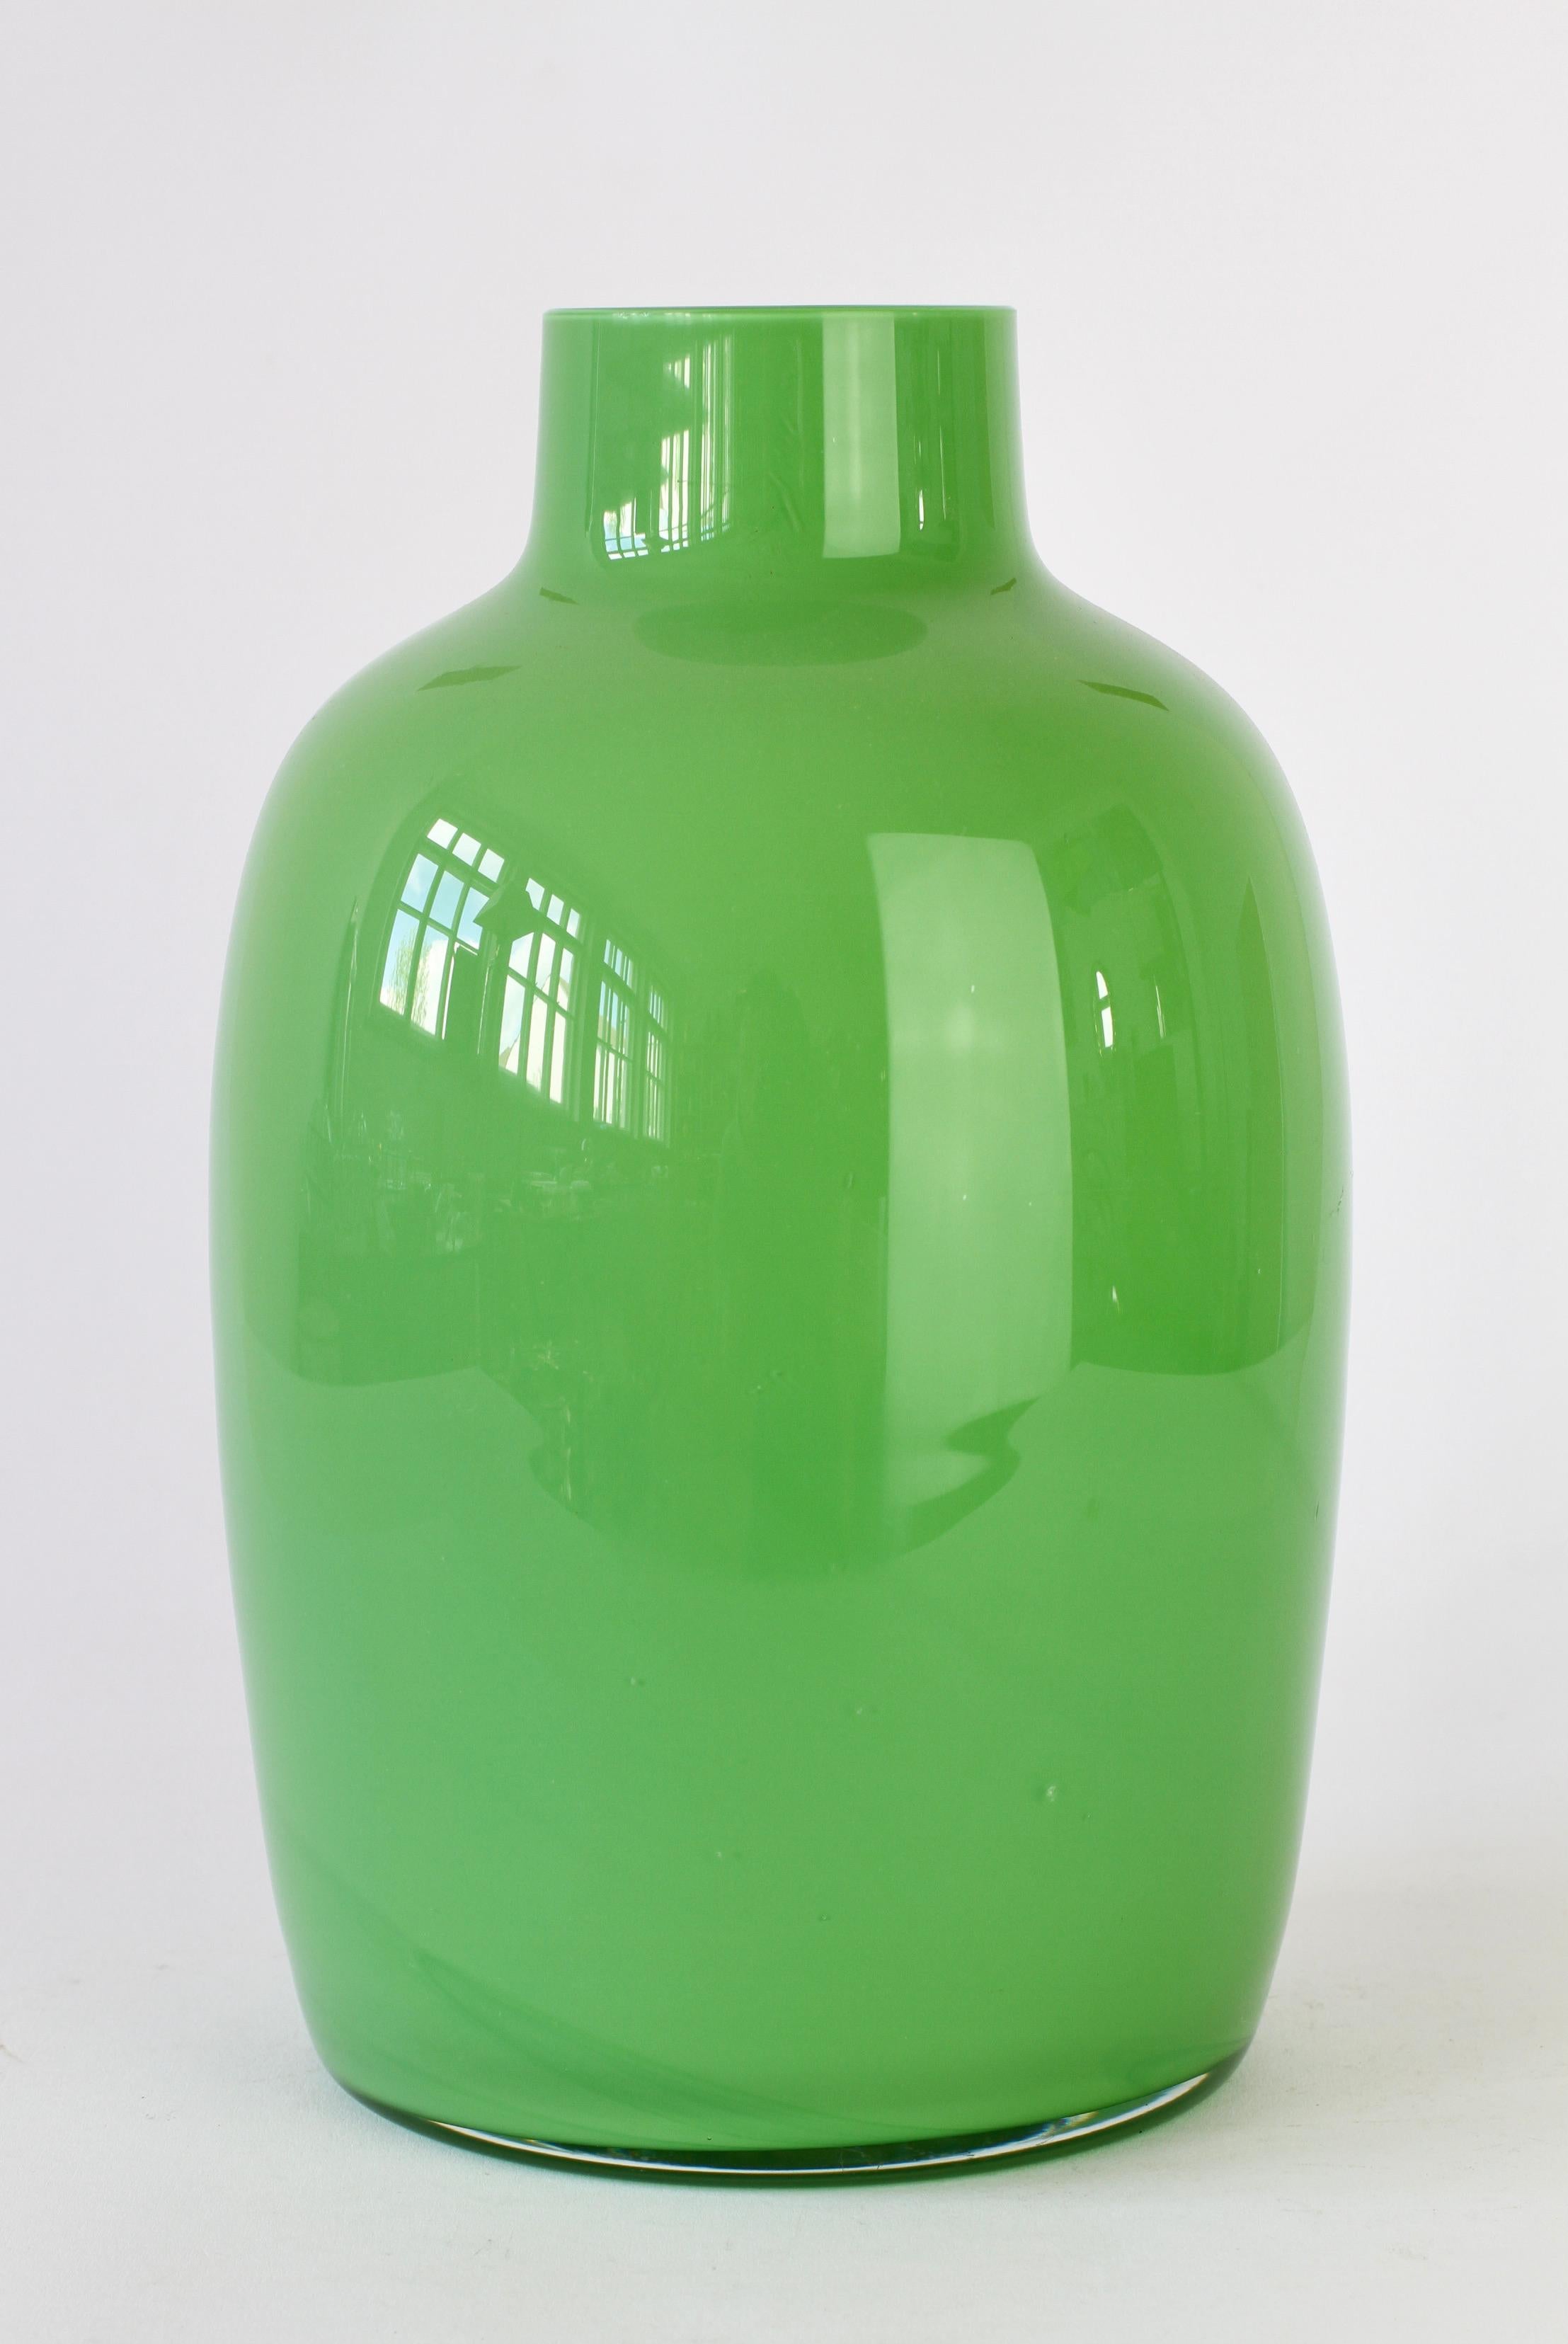 Merveilleux grand vase vert ou urne par Cenedese Vetri de Murano, Italie. Une façon amusante, funky et lumineuse d'ajouter une touche de couleur audacieuse à votre intérieur. Imaginez un verre comme celui-ci sur des étagères blanches ouvertes dans